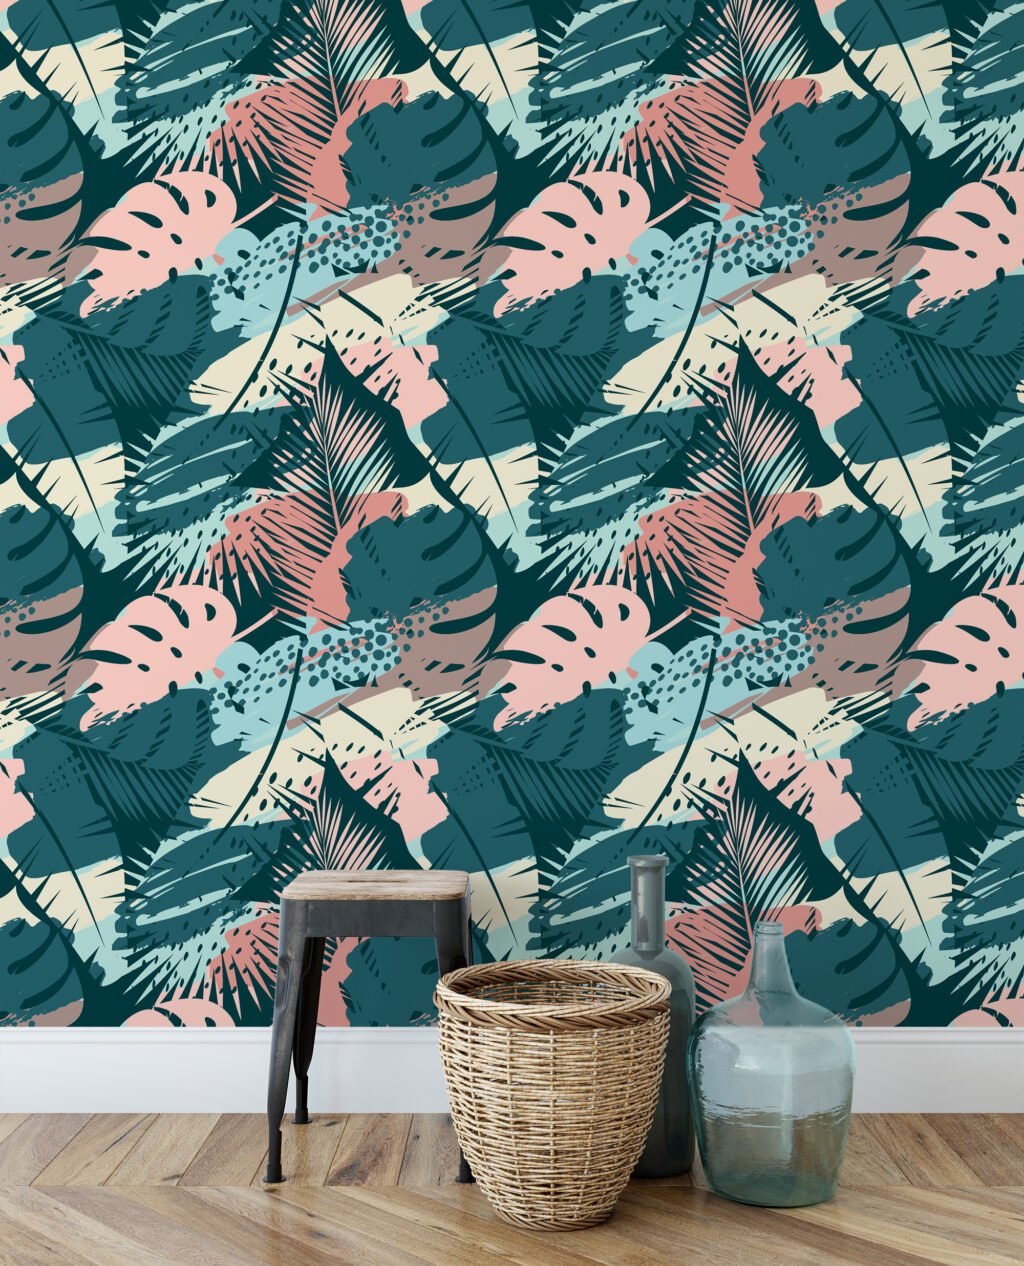 Botanik Siluet Tropikal Duvar Kağıdı, Şık Monstera Yaprak Desenli 3D Duvar Posteri Tropikal Duvar Kağıtları 5